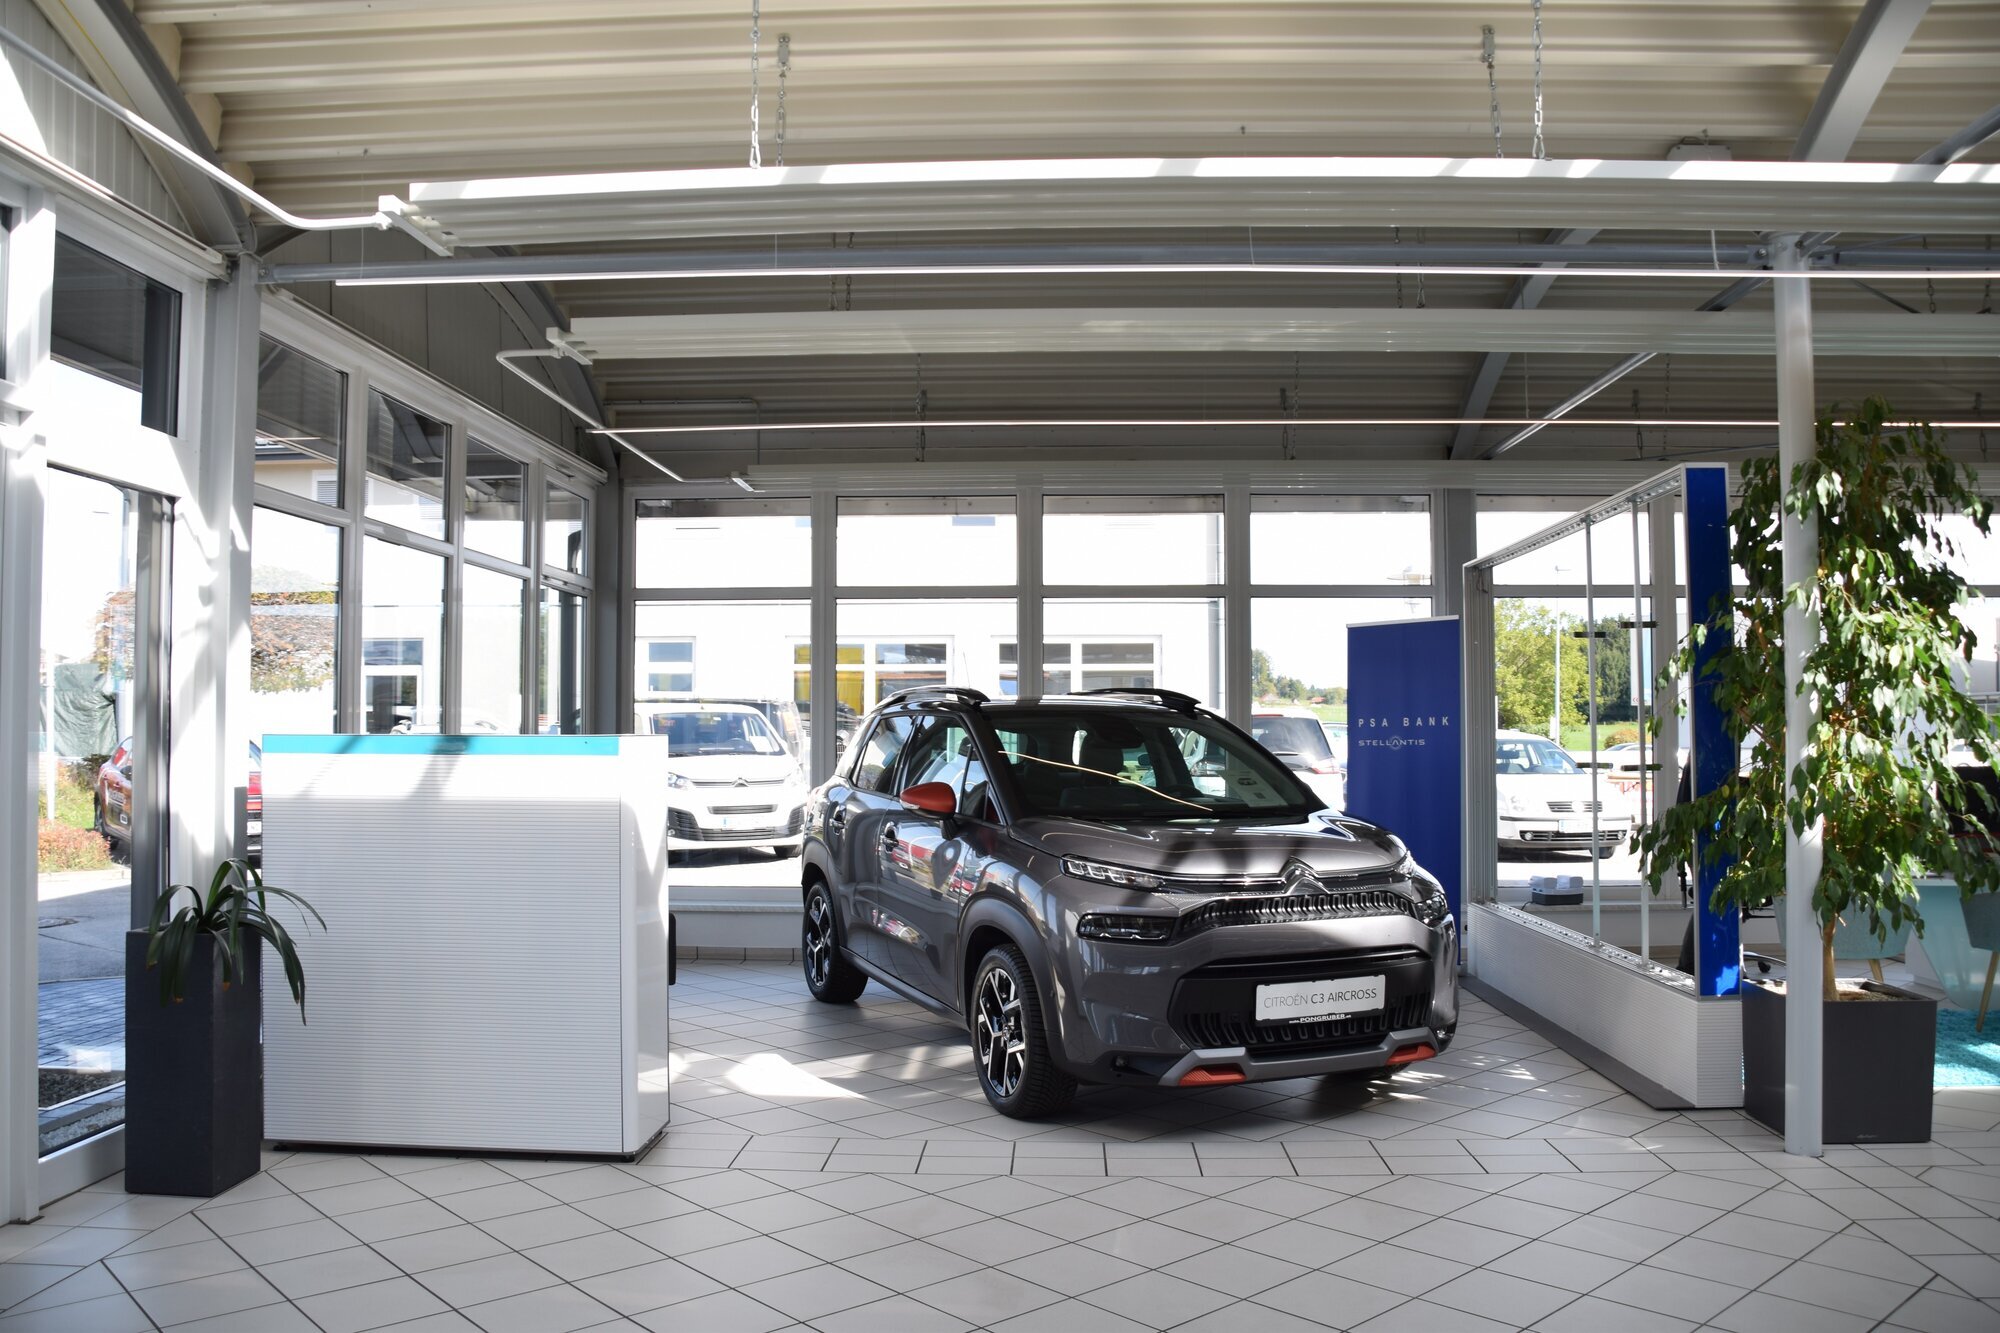 Bilder PONGRUBER Auto-Familie - Citroen und Opel Vertragspartner in Salzburg